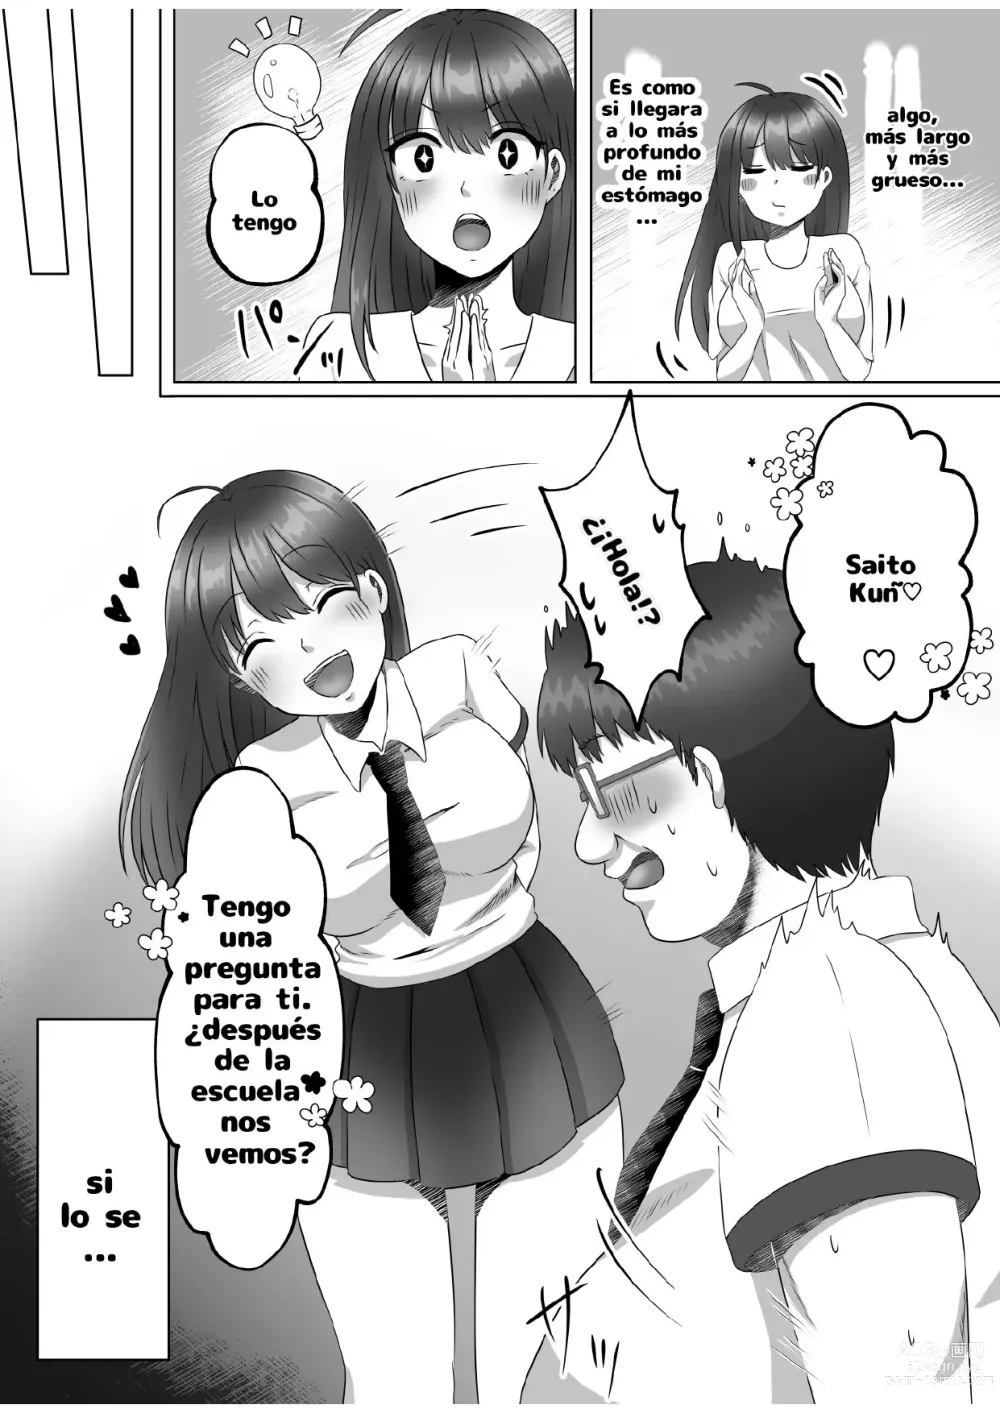 Page 16 of doujinshi ¿Porque me convertí en una mujer?